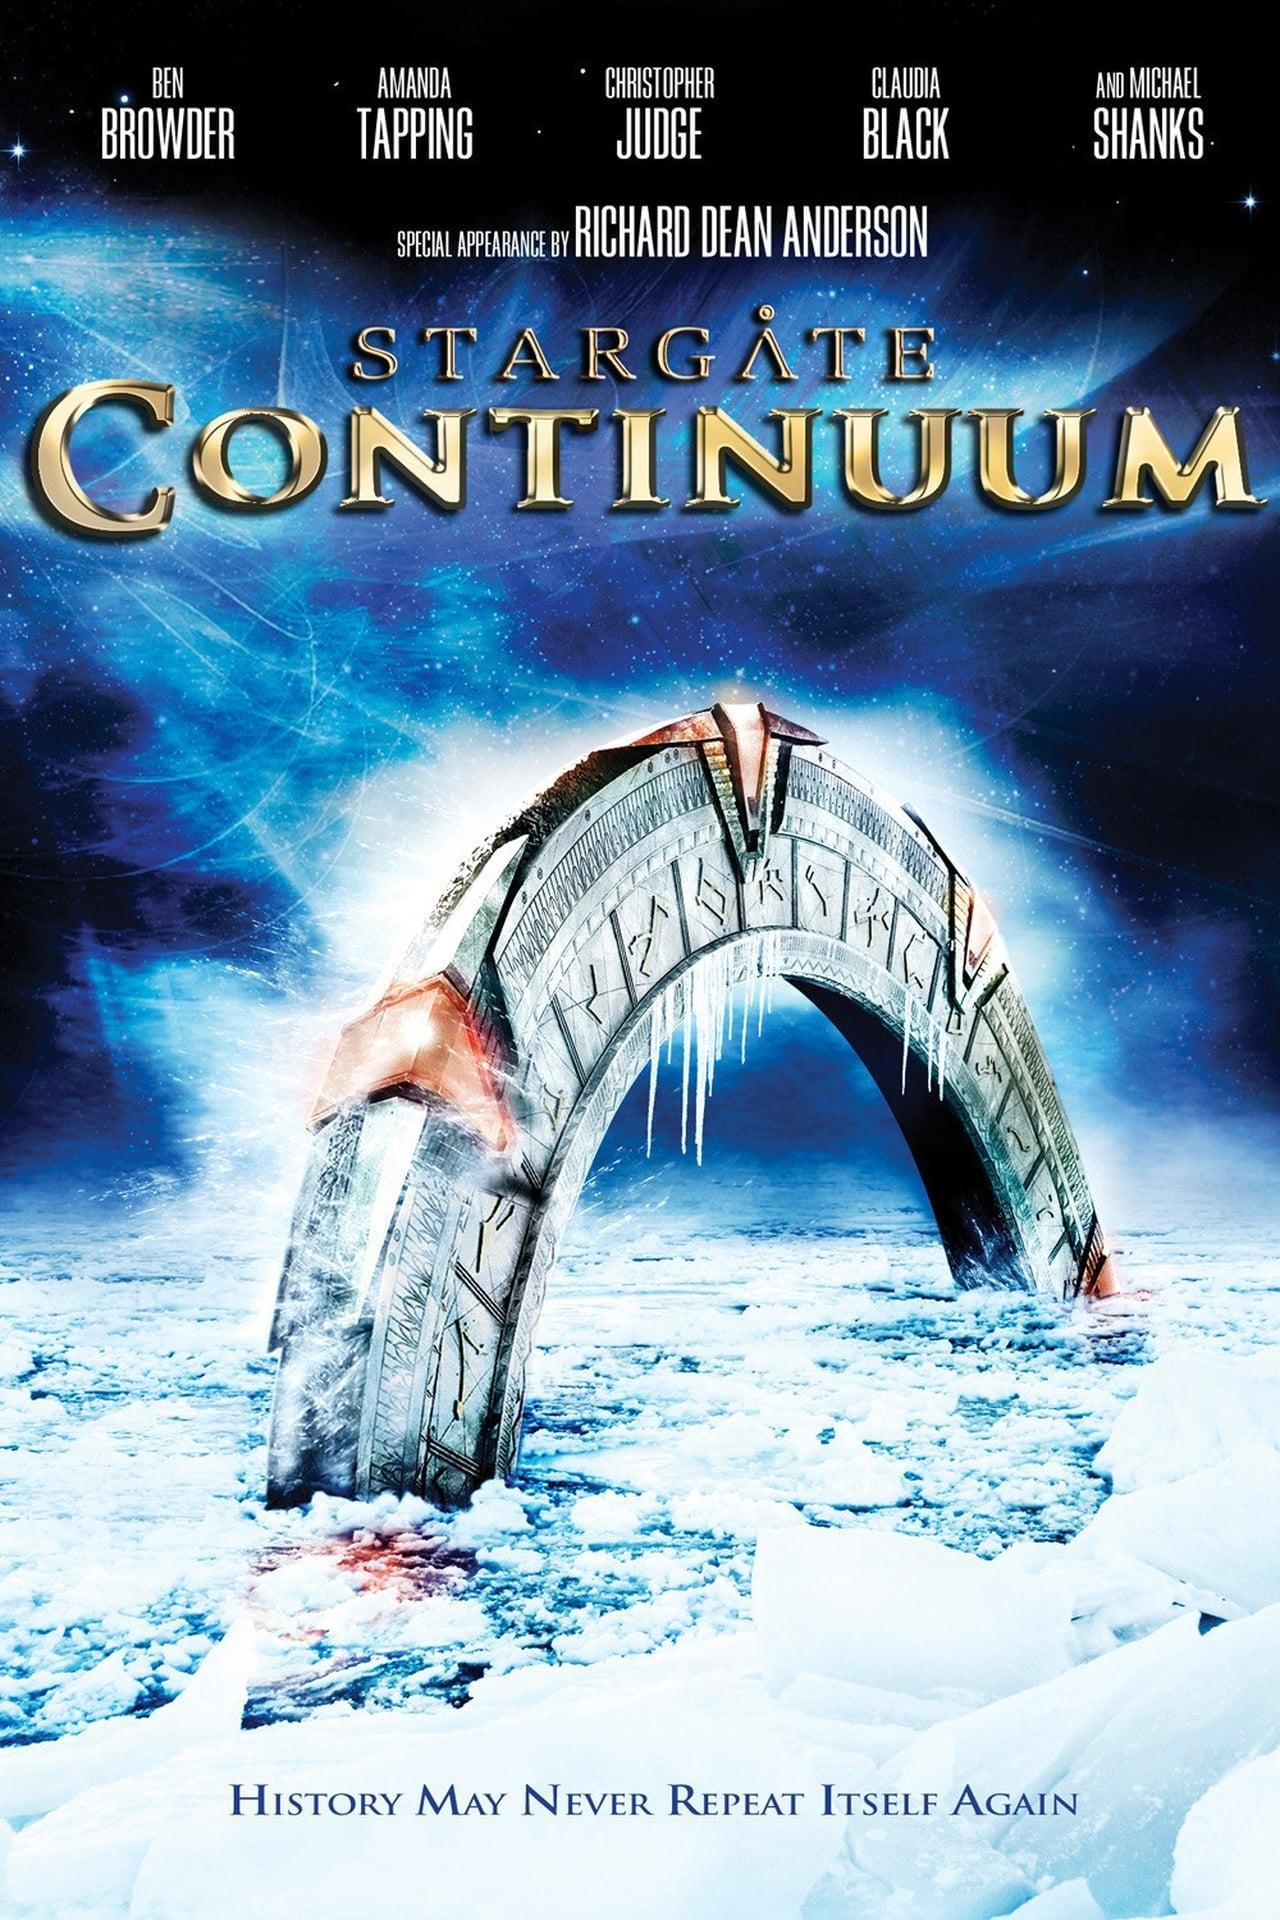 Stargate: Continuum poster